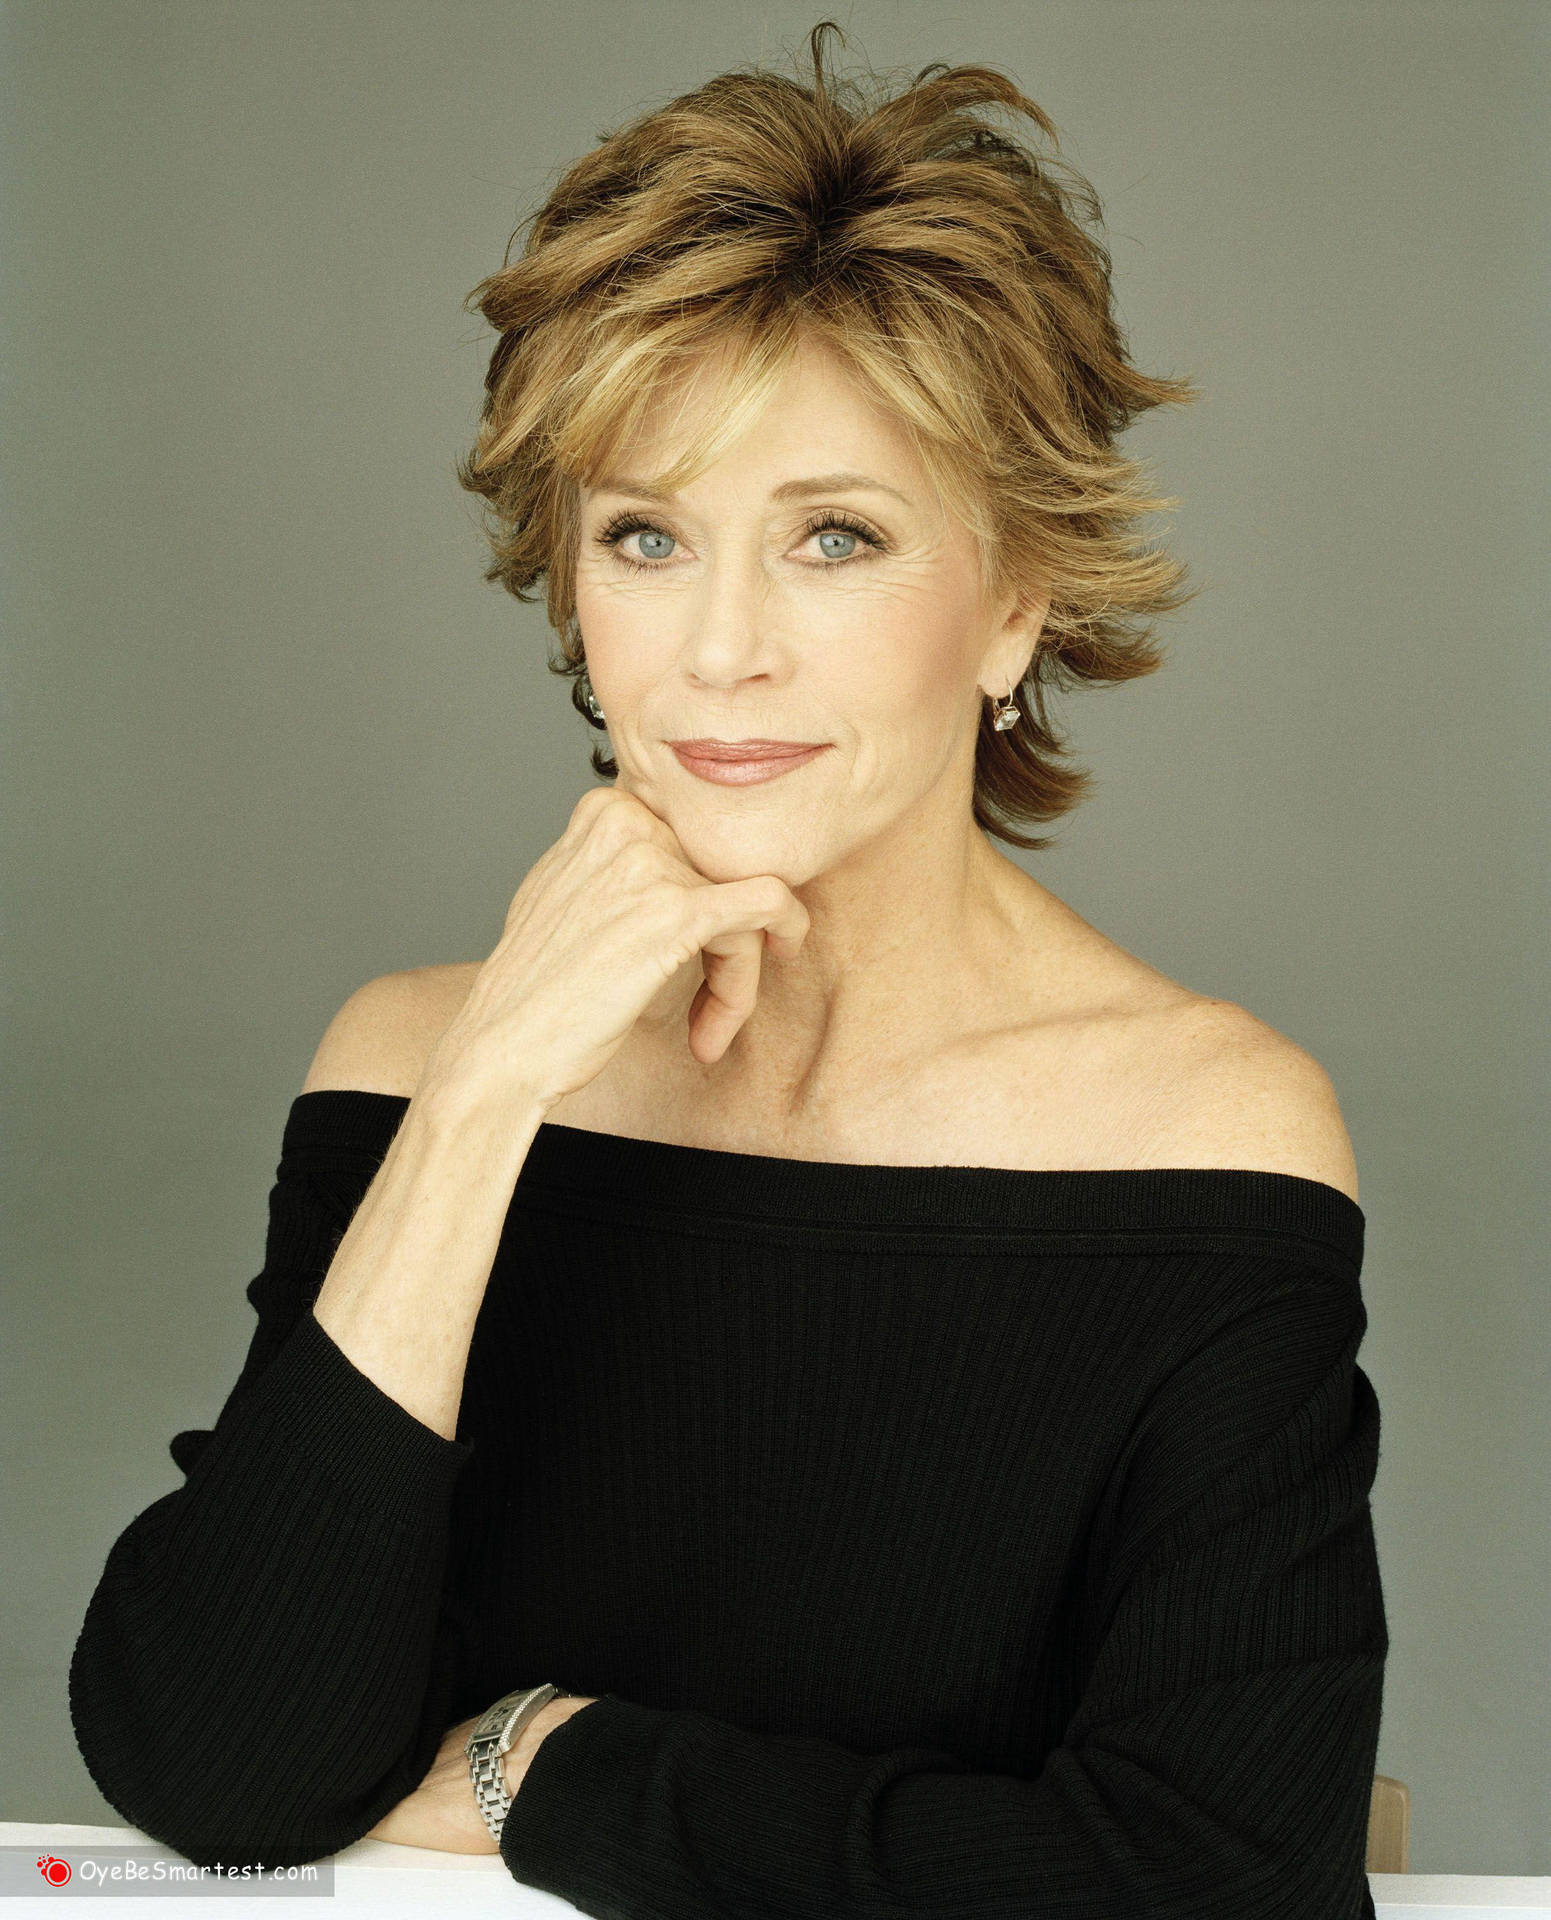 Amerikansk skuespiller Jane Fonda i sort og hvid Wallpaper